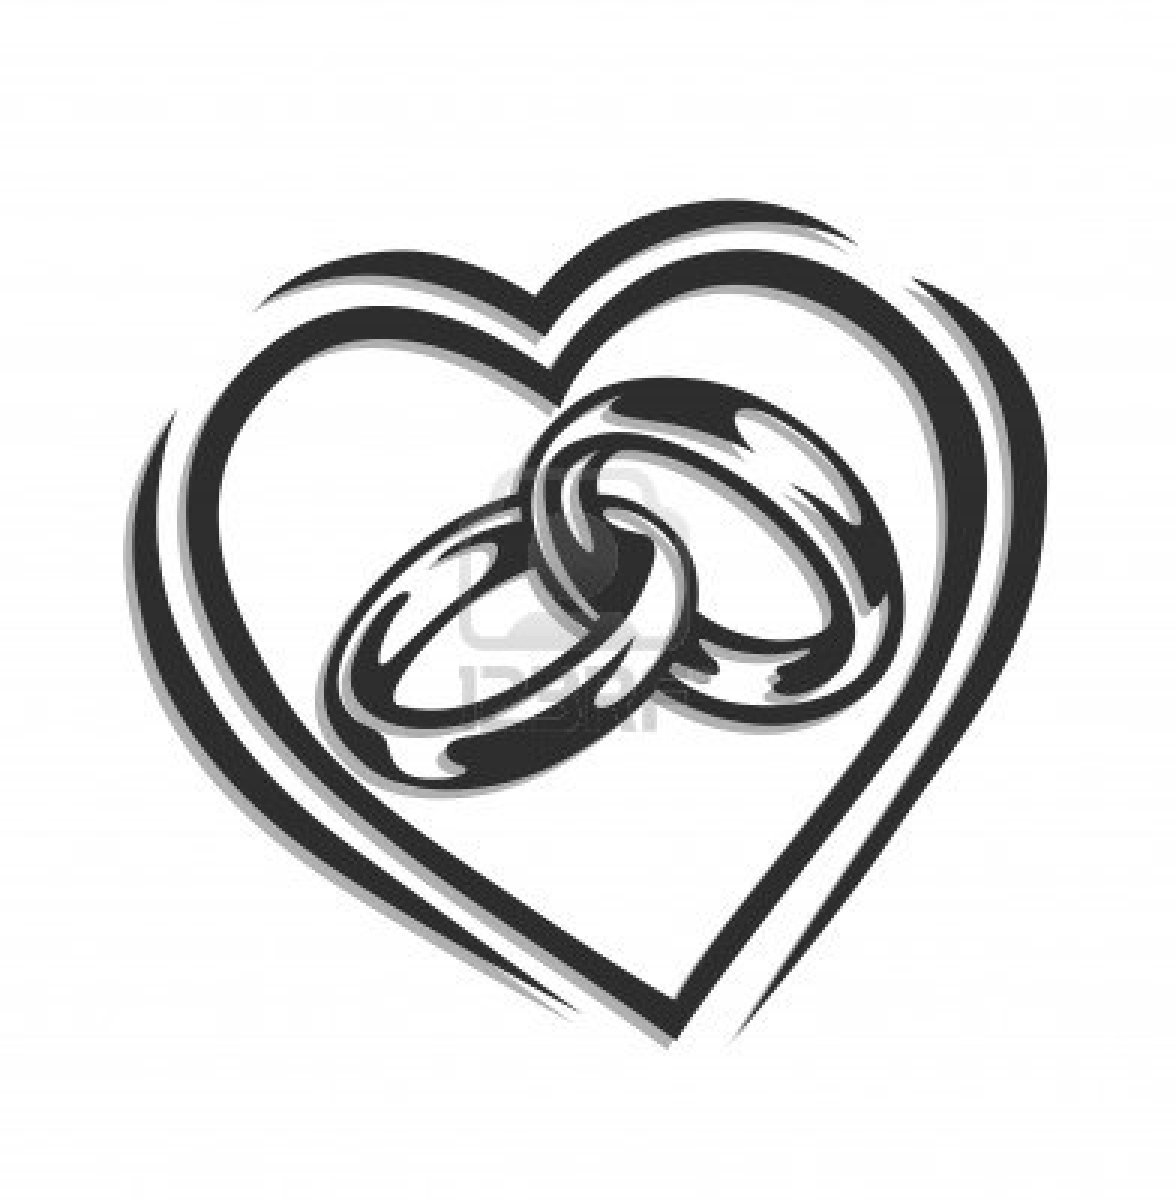 Clip art wedding rings intert